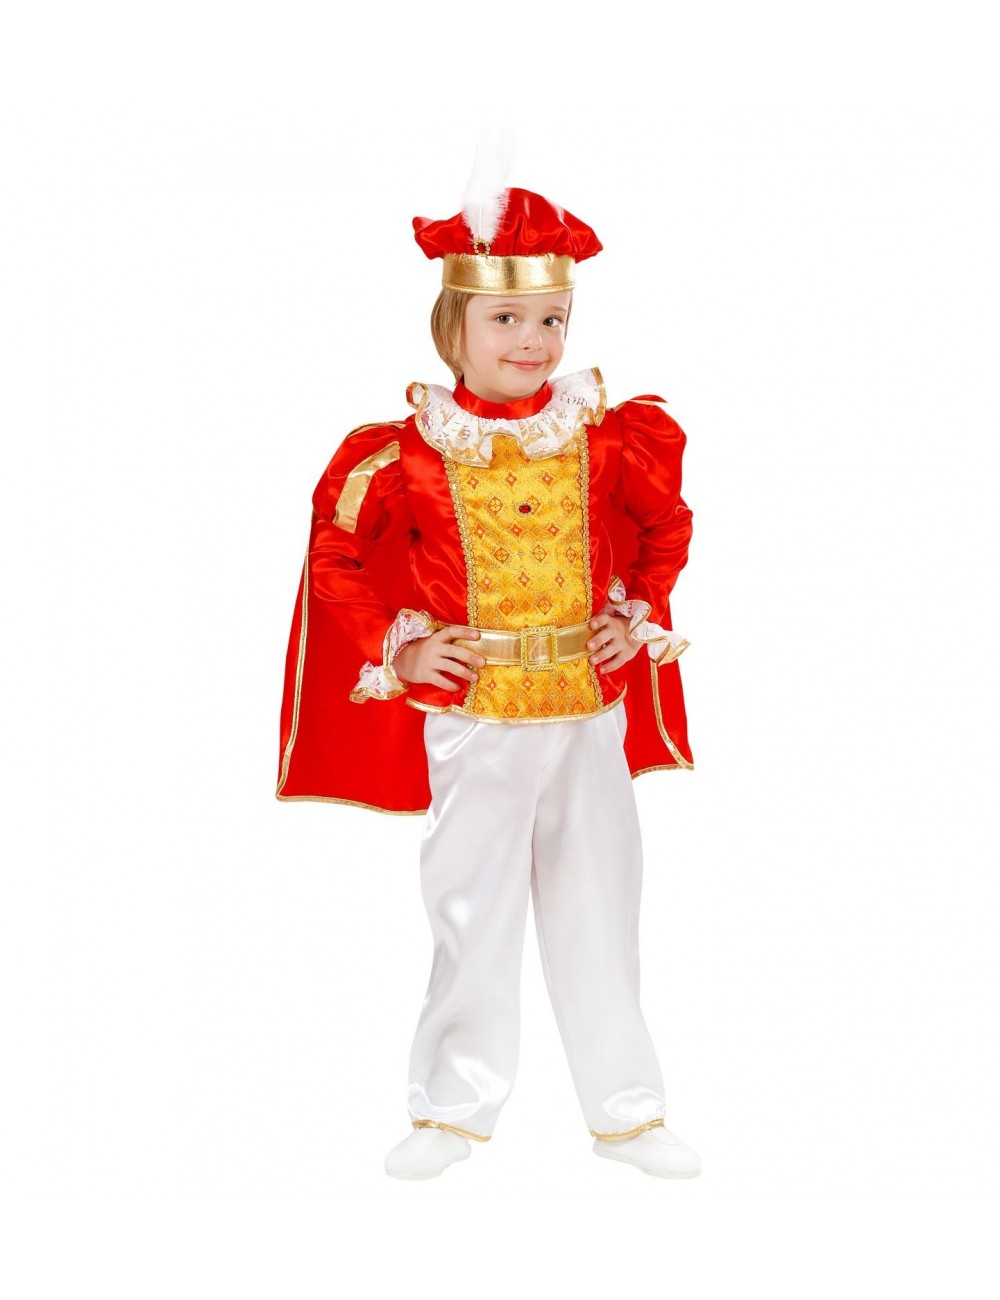 Costume prince enfant